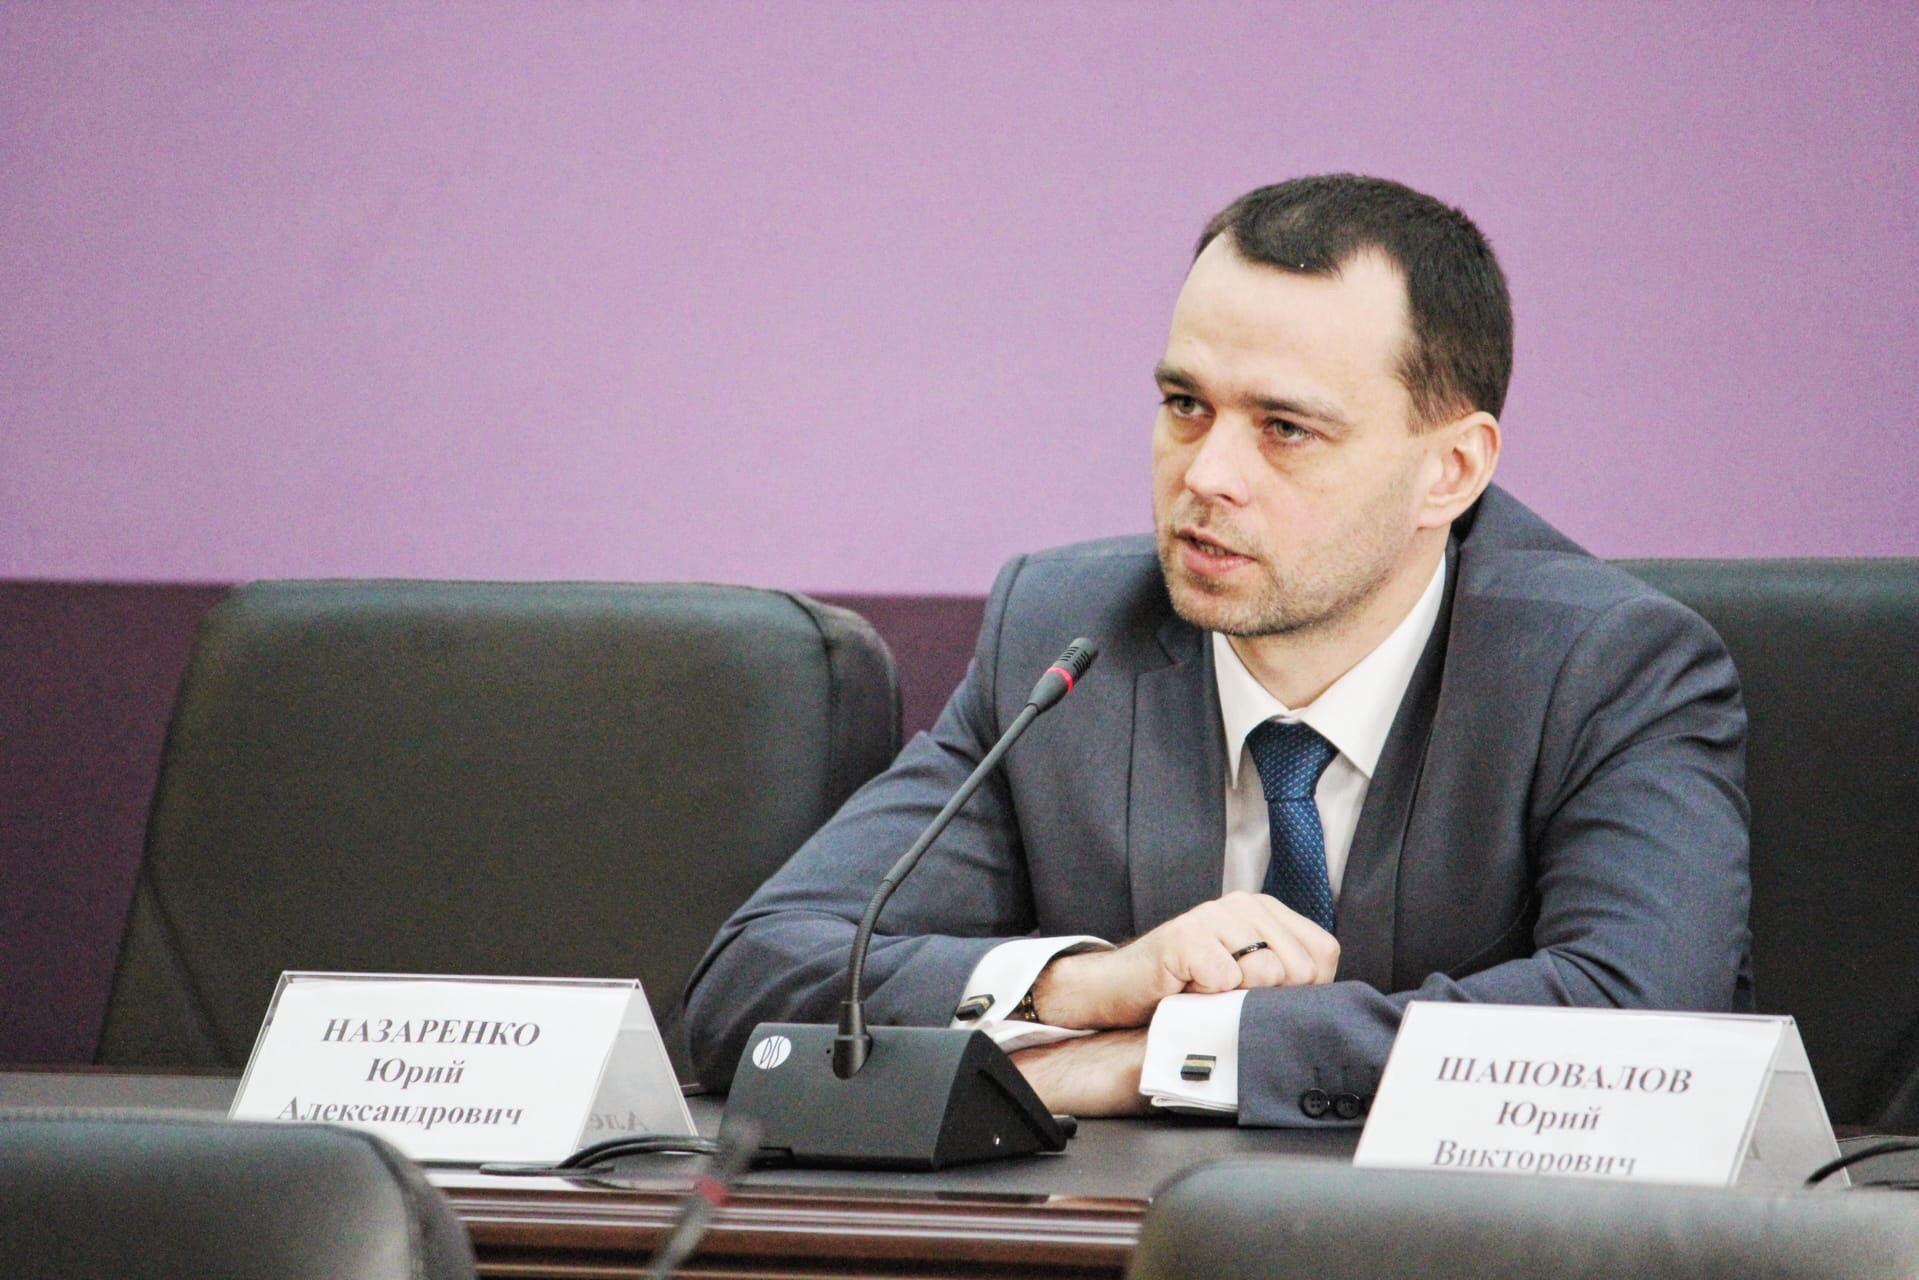 Юрий Назаренко, заместитель министра региональной политики и массовых коммуникаций Омской области 